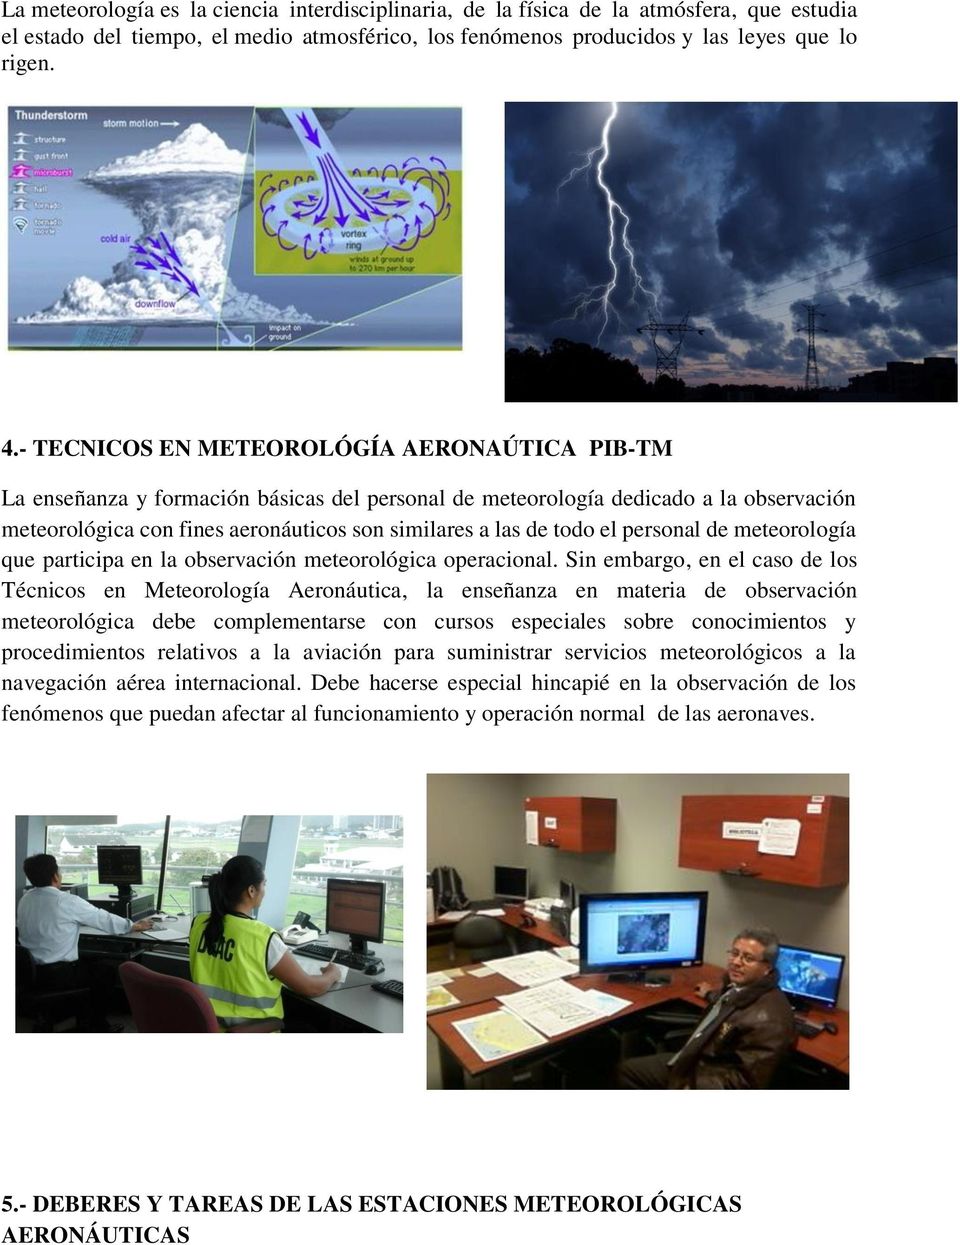 el personal de meteorología que participa en la observación meteorológica operacional.